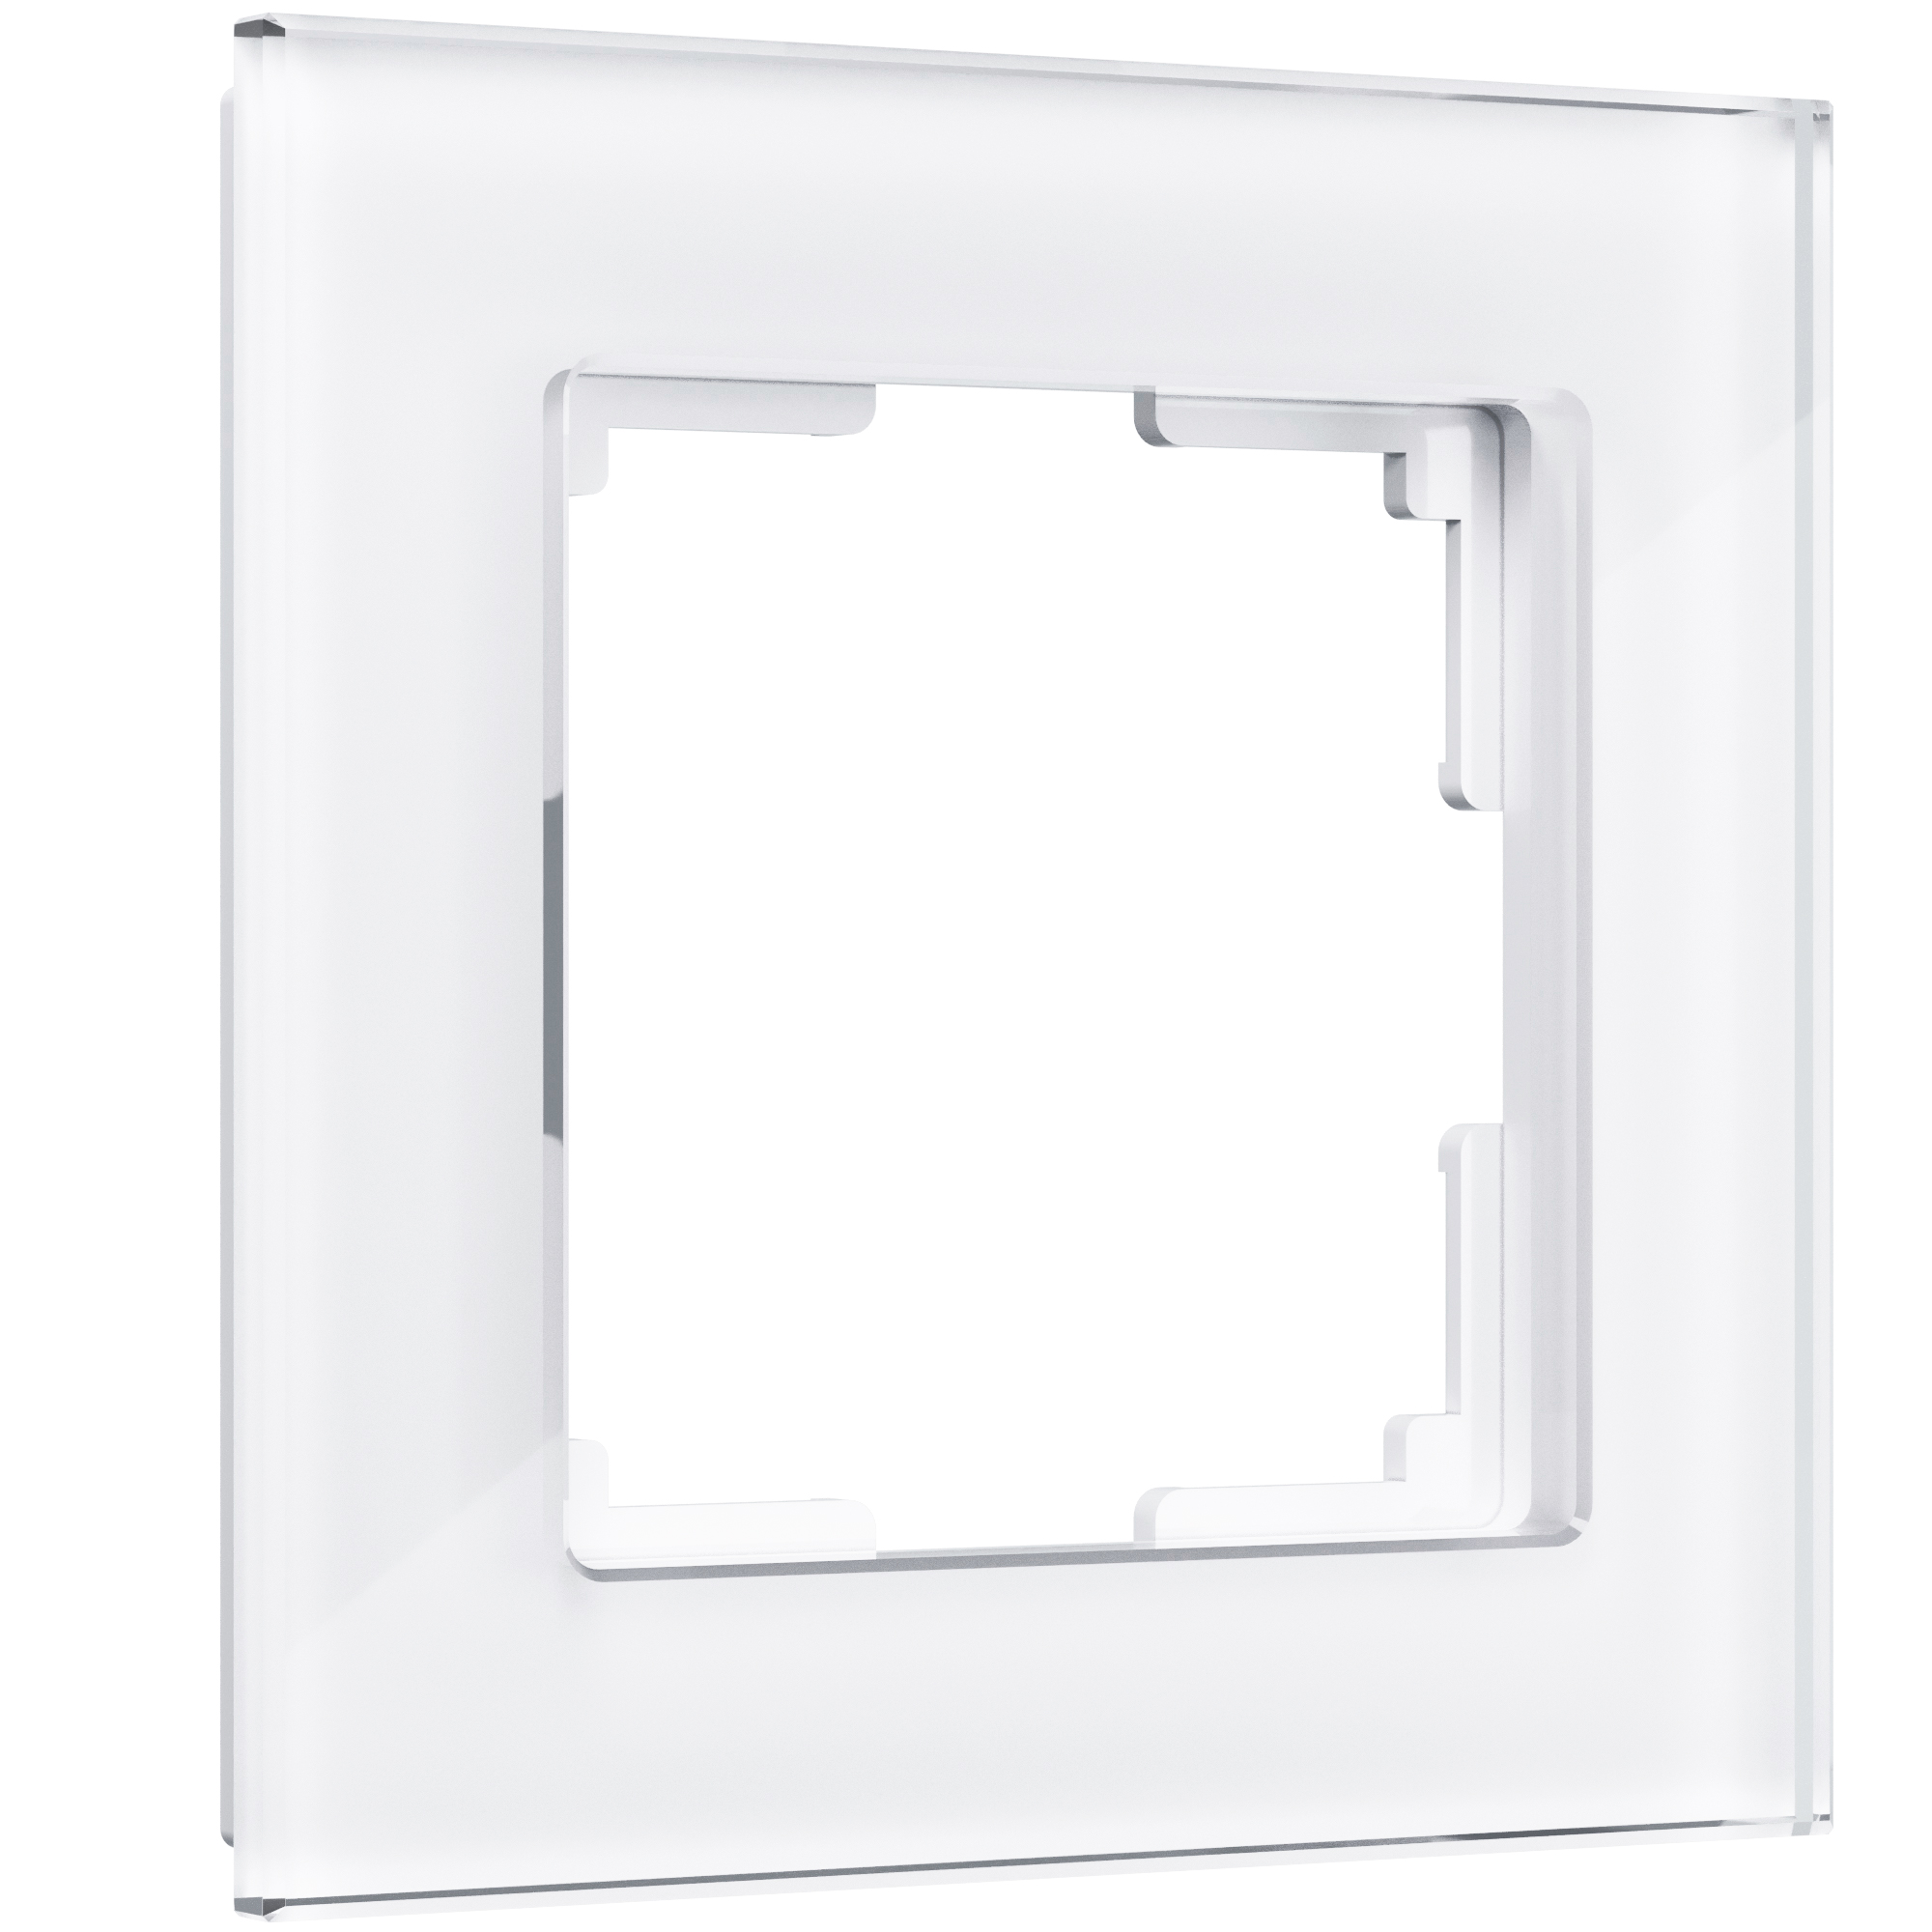 Рамка для розетки / выключателя на 1 пост Werkel W0011101 Favorit белый стекло рамка на 1 пост werkel favorit w0011141 4690389183362